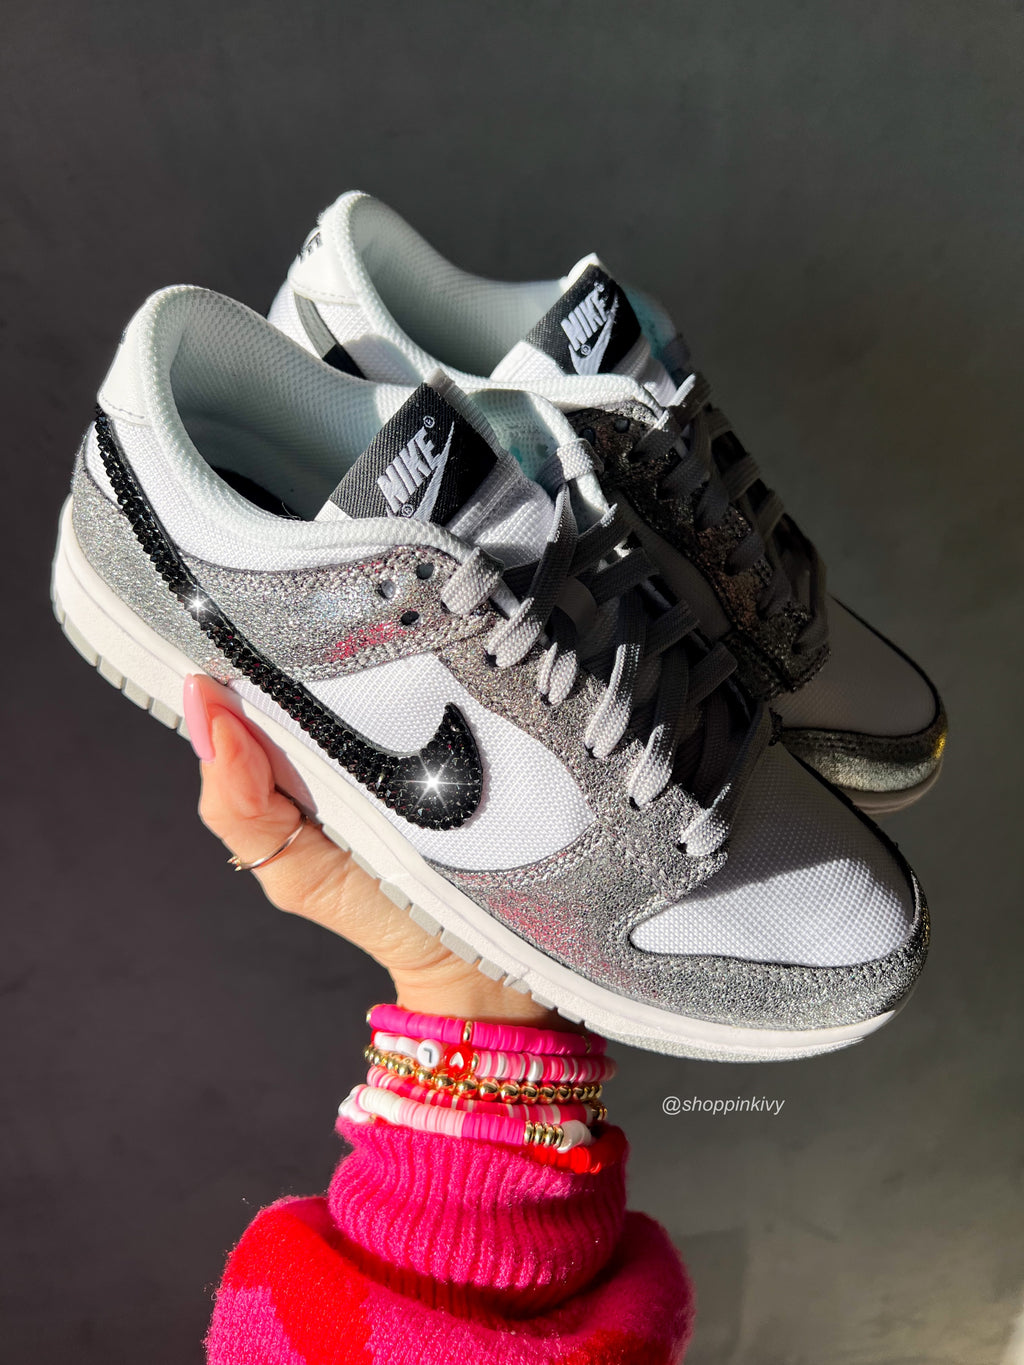 Raros zapatos Nike Dunk metálicos Swarovski para mujer